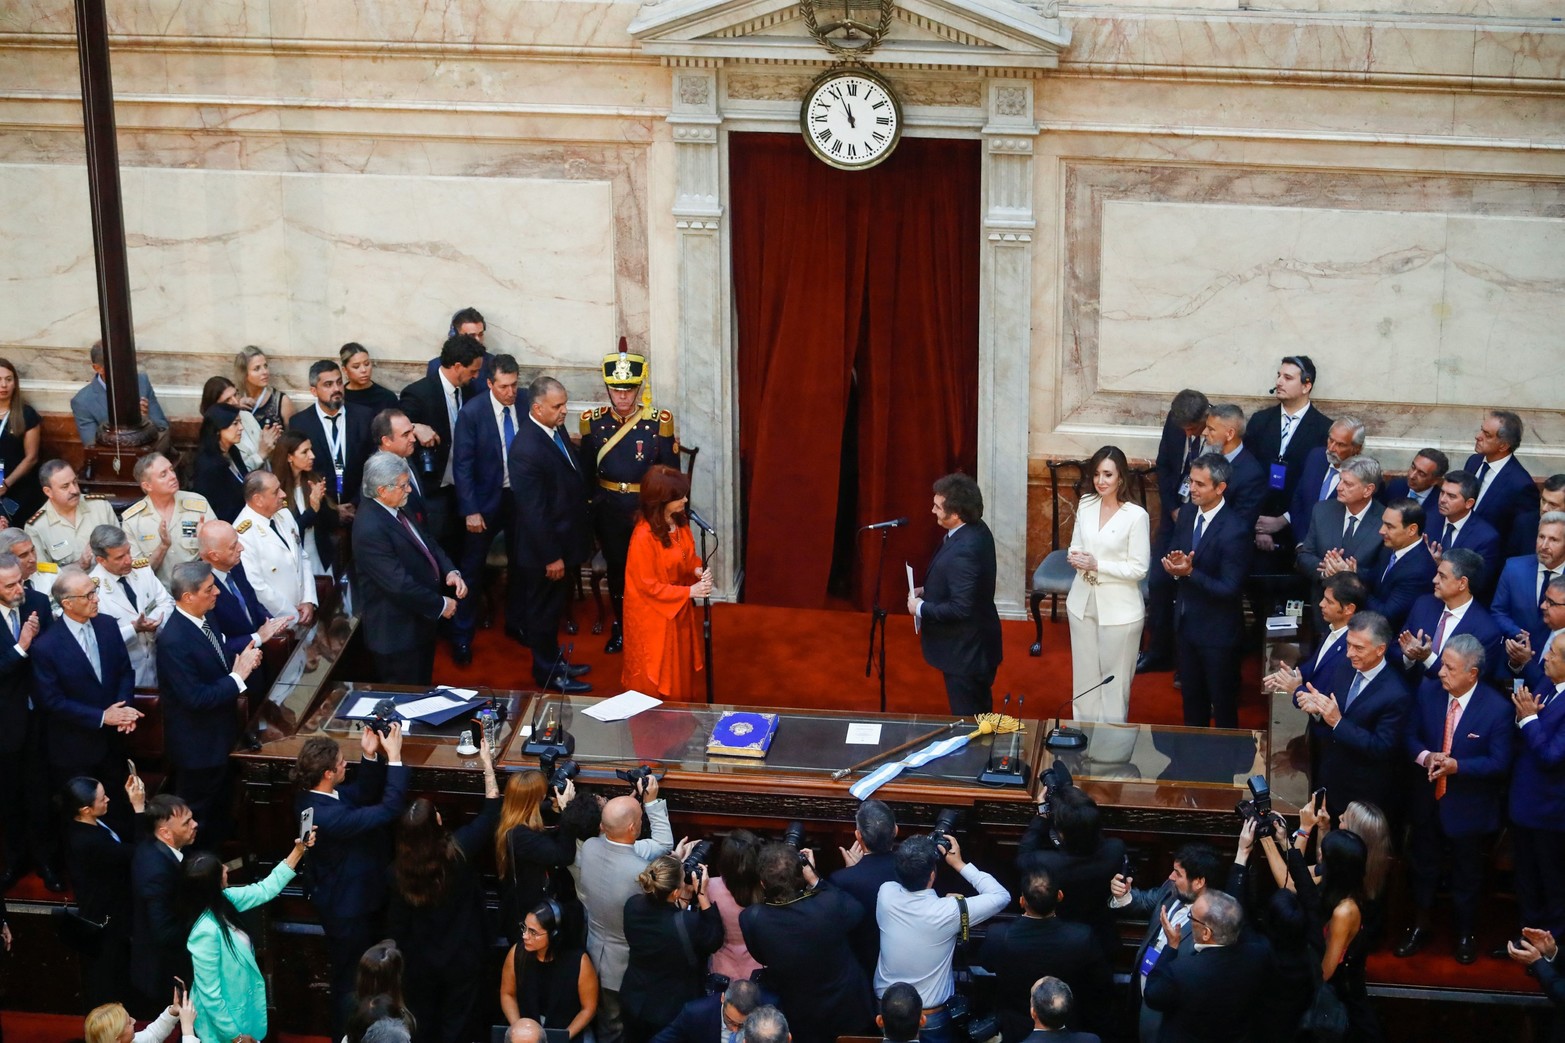 El flamante mandatario recibió los atributos de manos del saliente Alberto Fernández. No habló ante el cuerpo parlamentario, sino después en la plaza